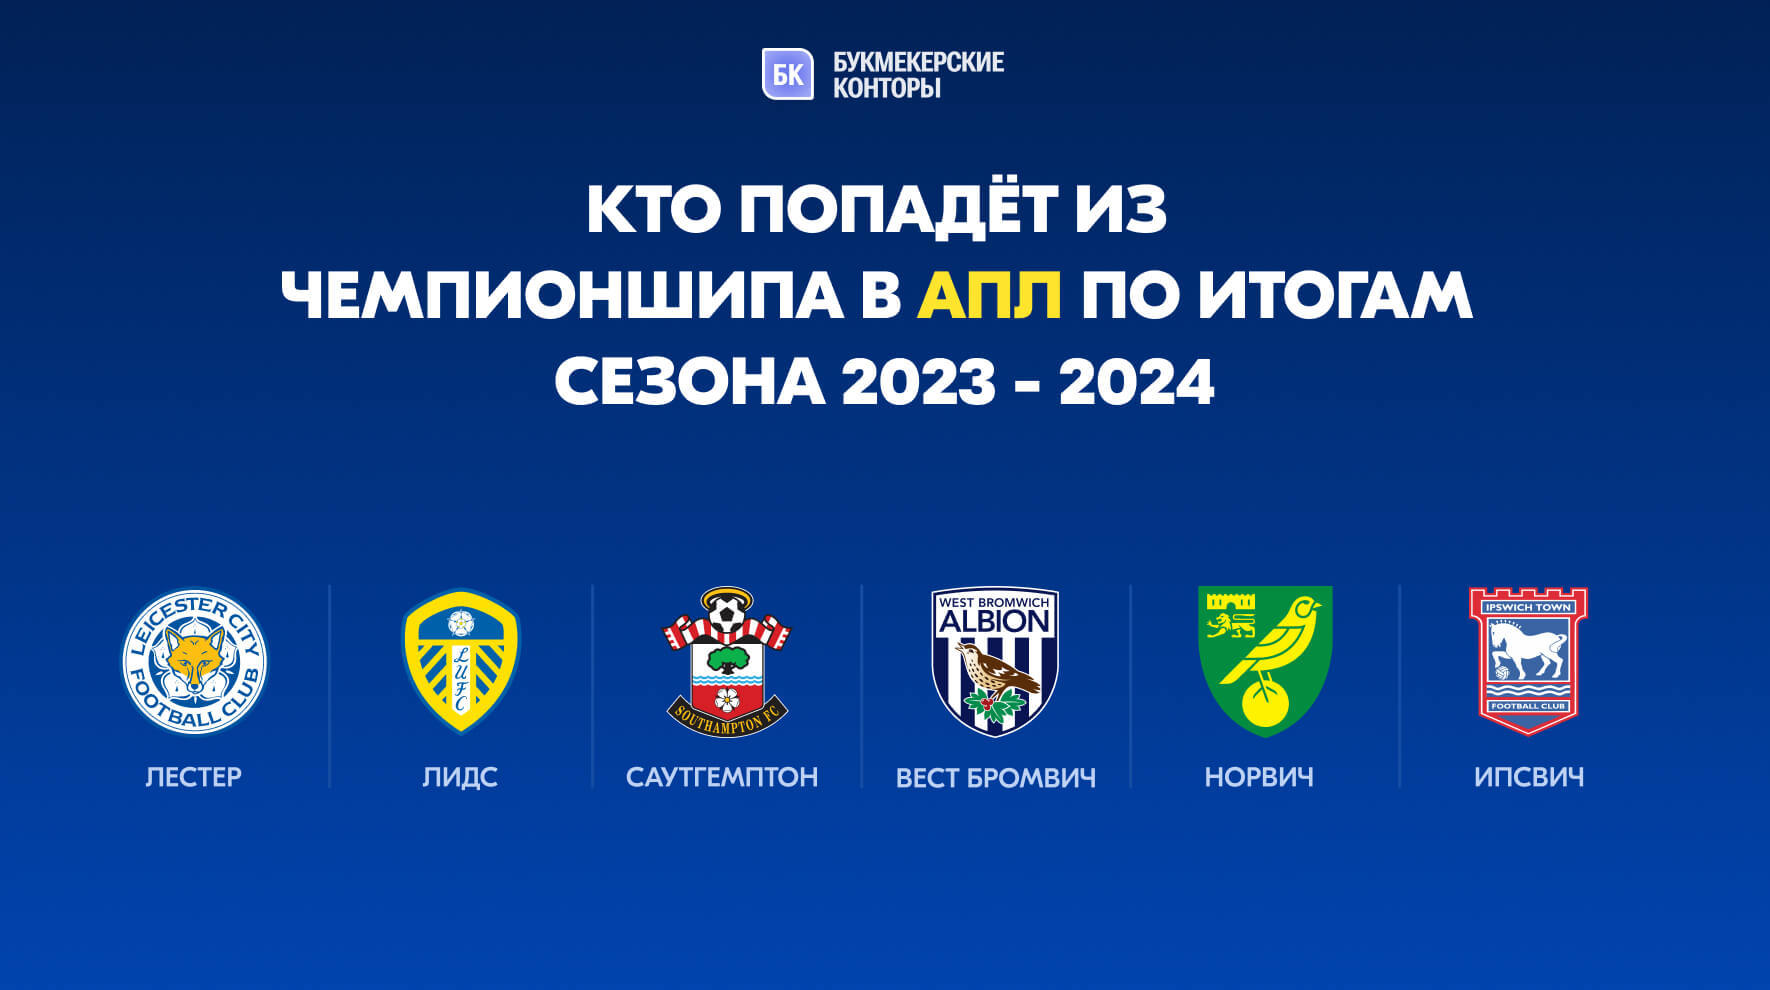 Какие команды попадут из Чемпионшипа в АПЛ по итогам сезона 2023 - 2024